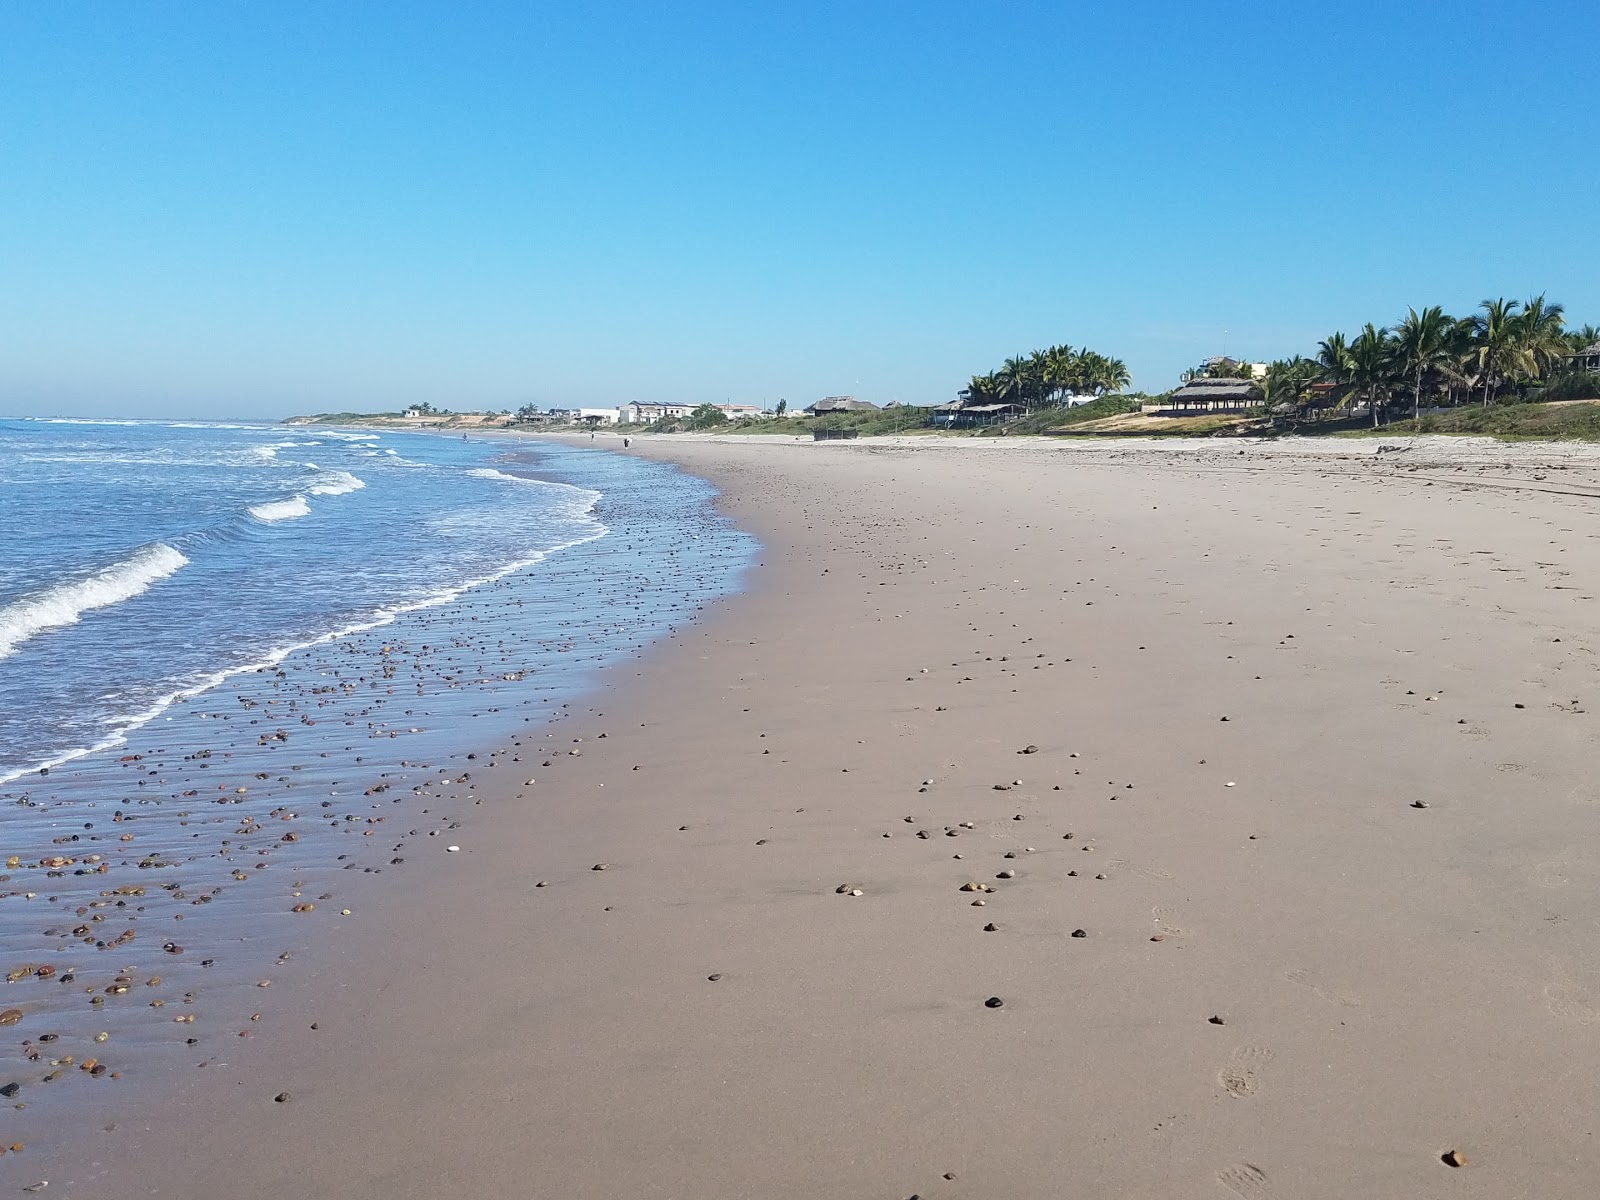 Celestino beach'in fotoğrafı kısmen temiz temizlik seviyesi ile